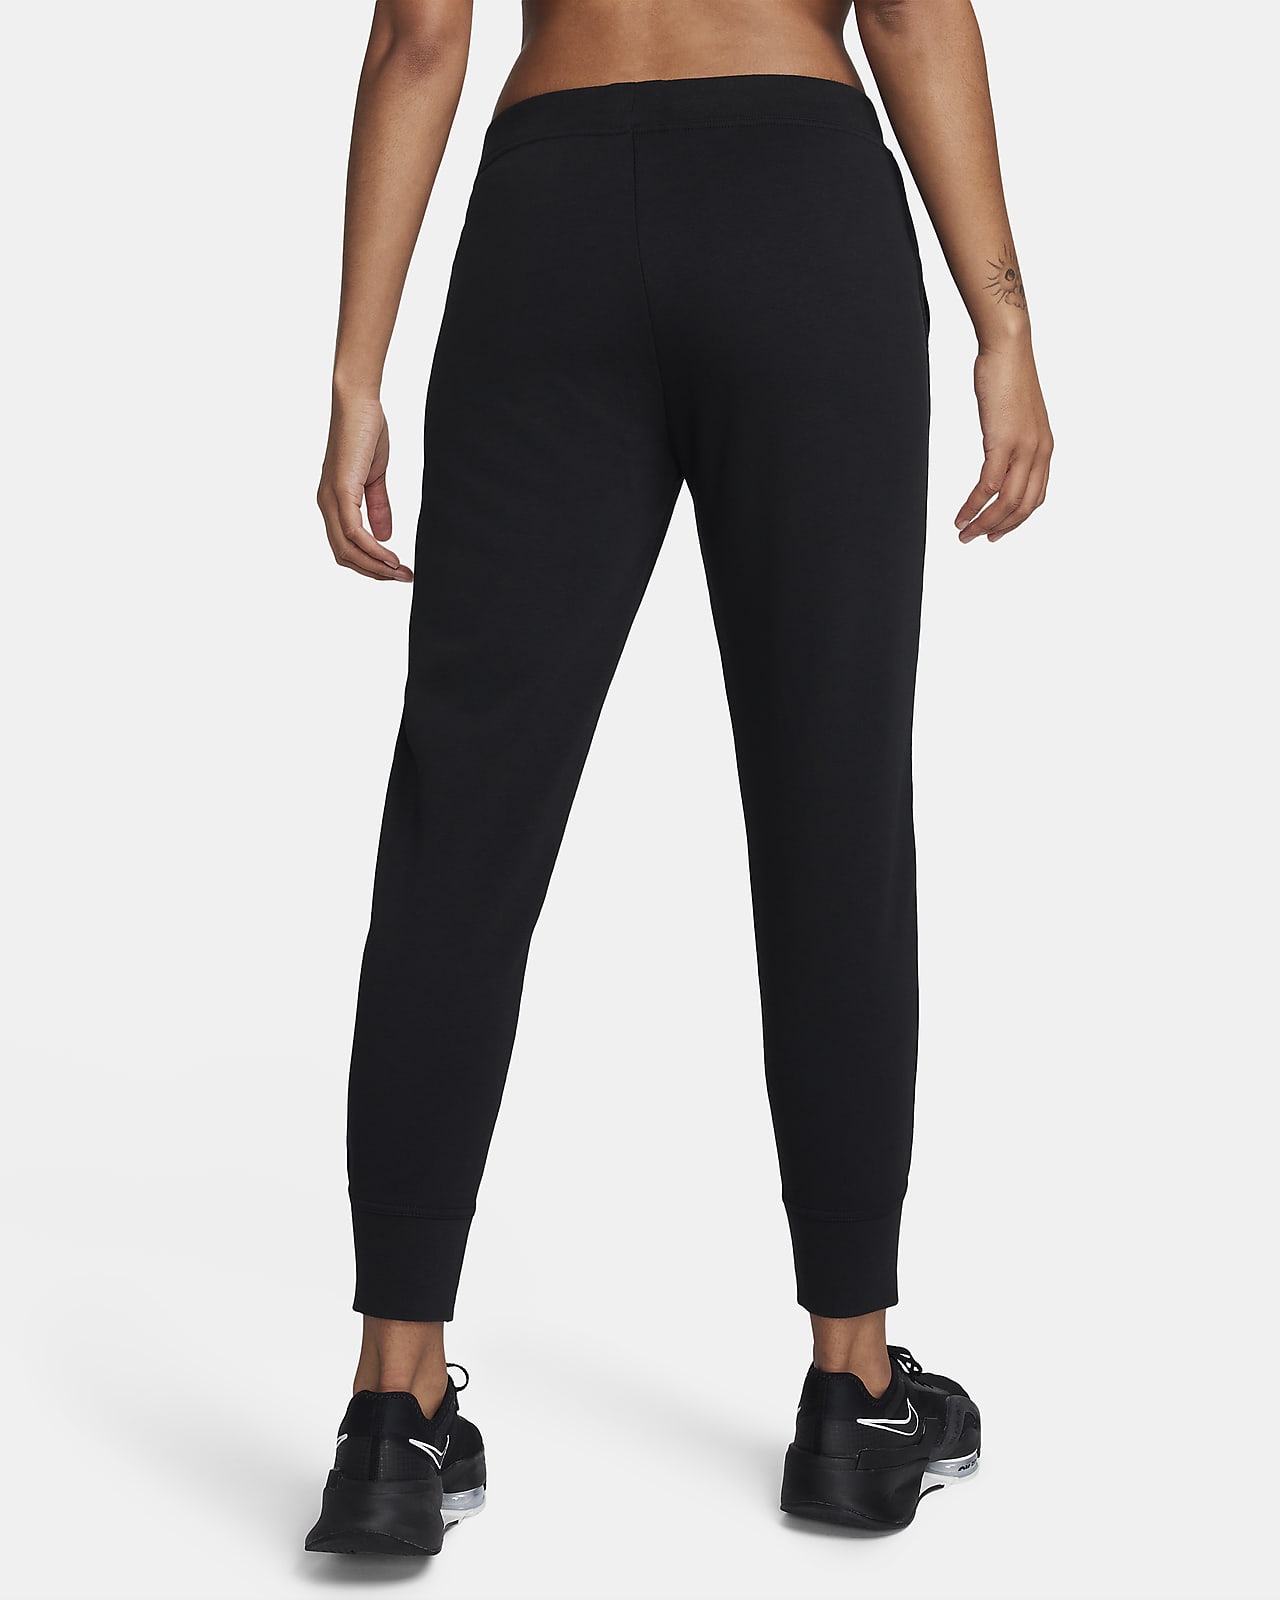 Necesario seguro Abuelos visitantes Nike Dri-FIT Get Fit Pantalón de entrenamiento - Mujer. Nike ES